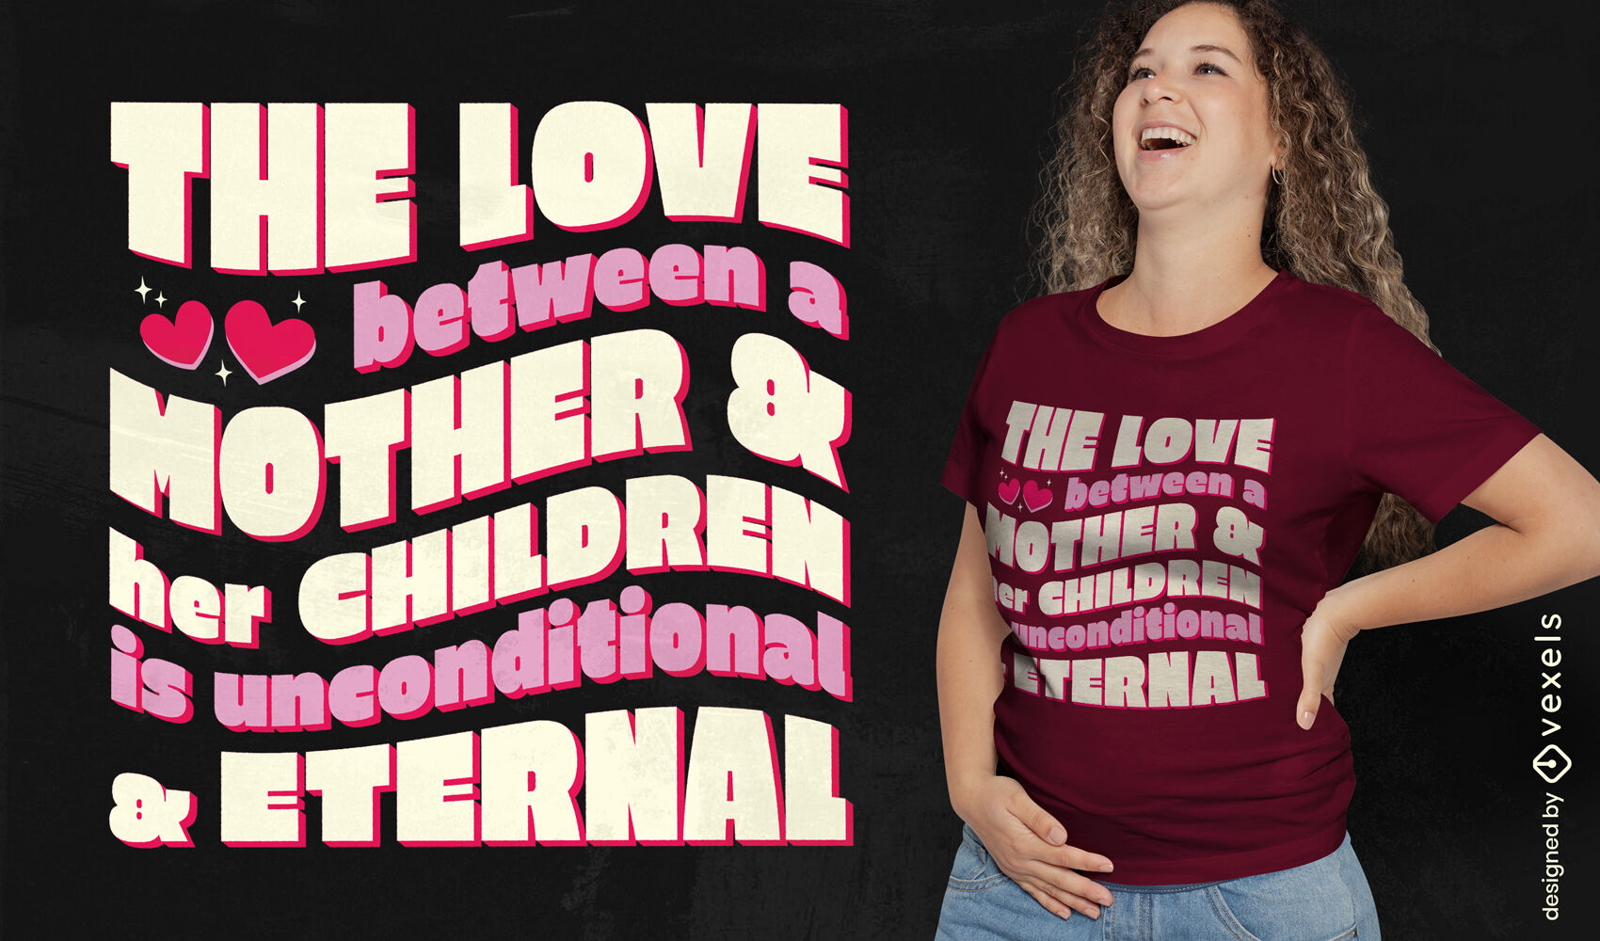 Dise?o de camiseta con cita de amor de madre e hijo.